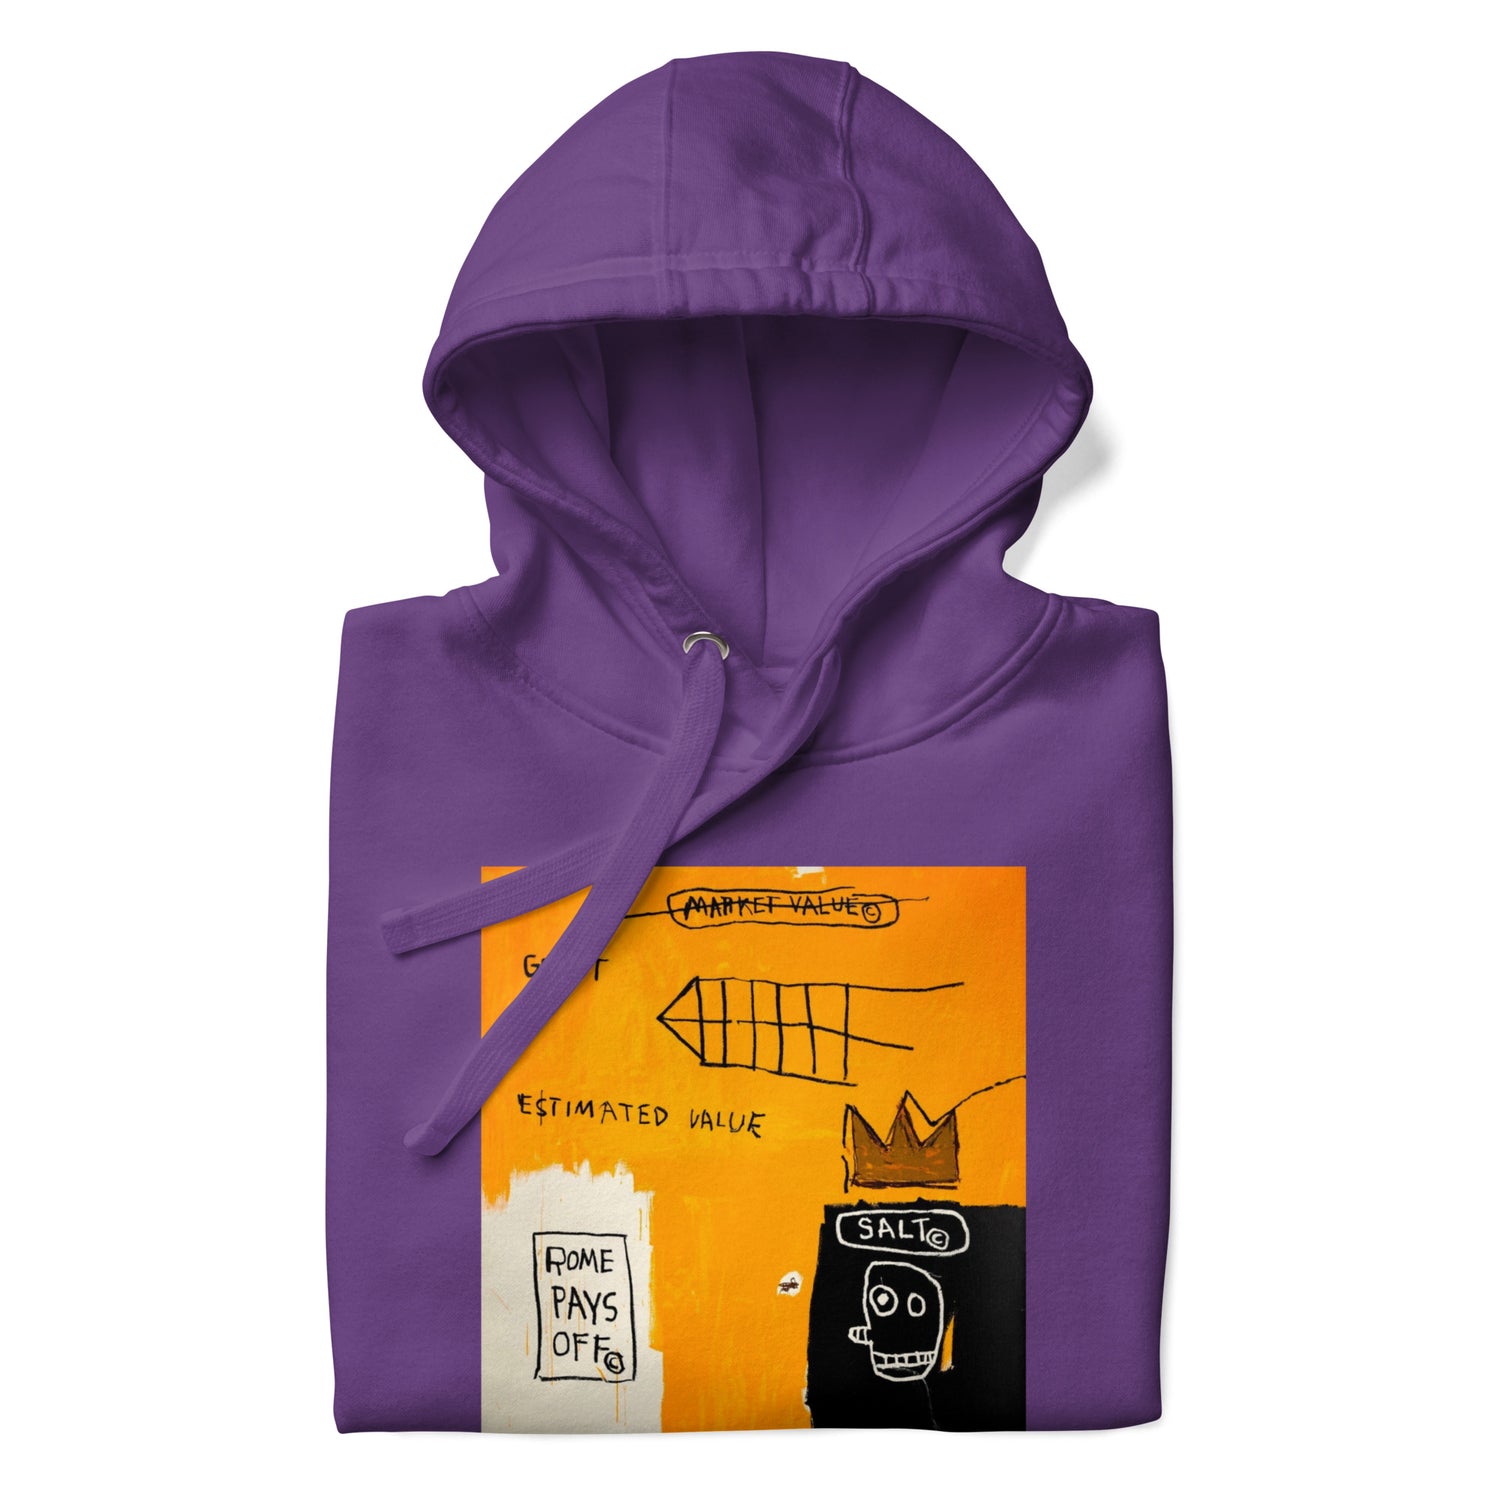 Jean-Michel Basquiat "Rome Pays Off" Artwork Printed Premium Streetwear Sweatshirt Hoodie Purple